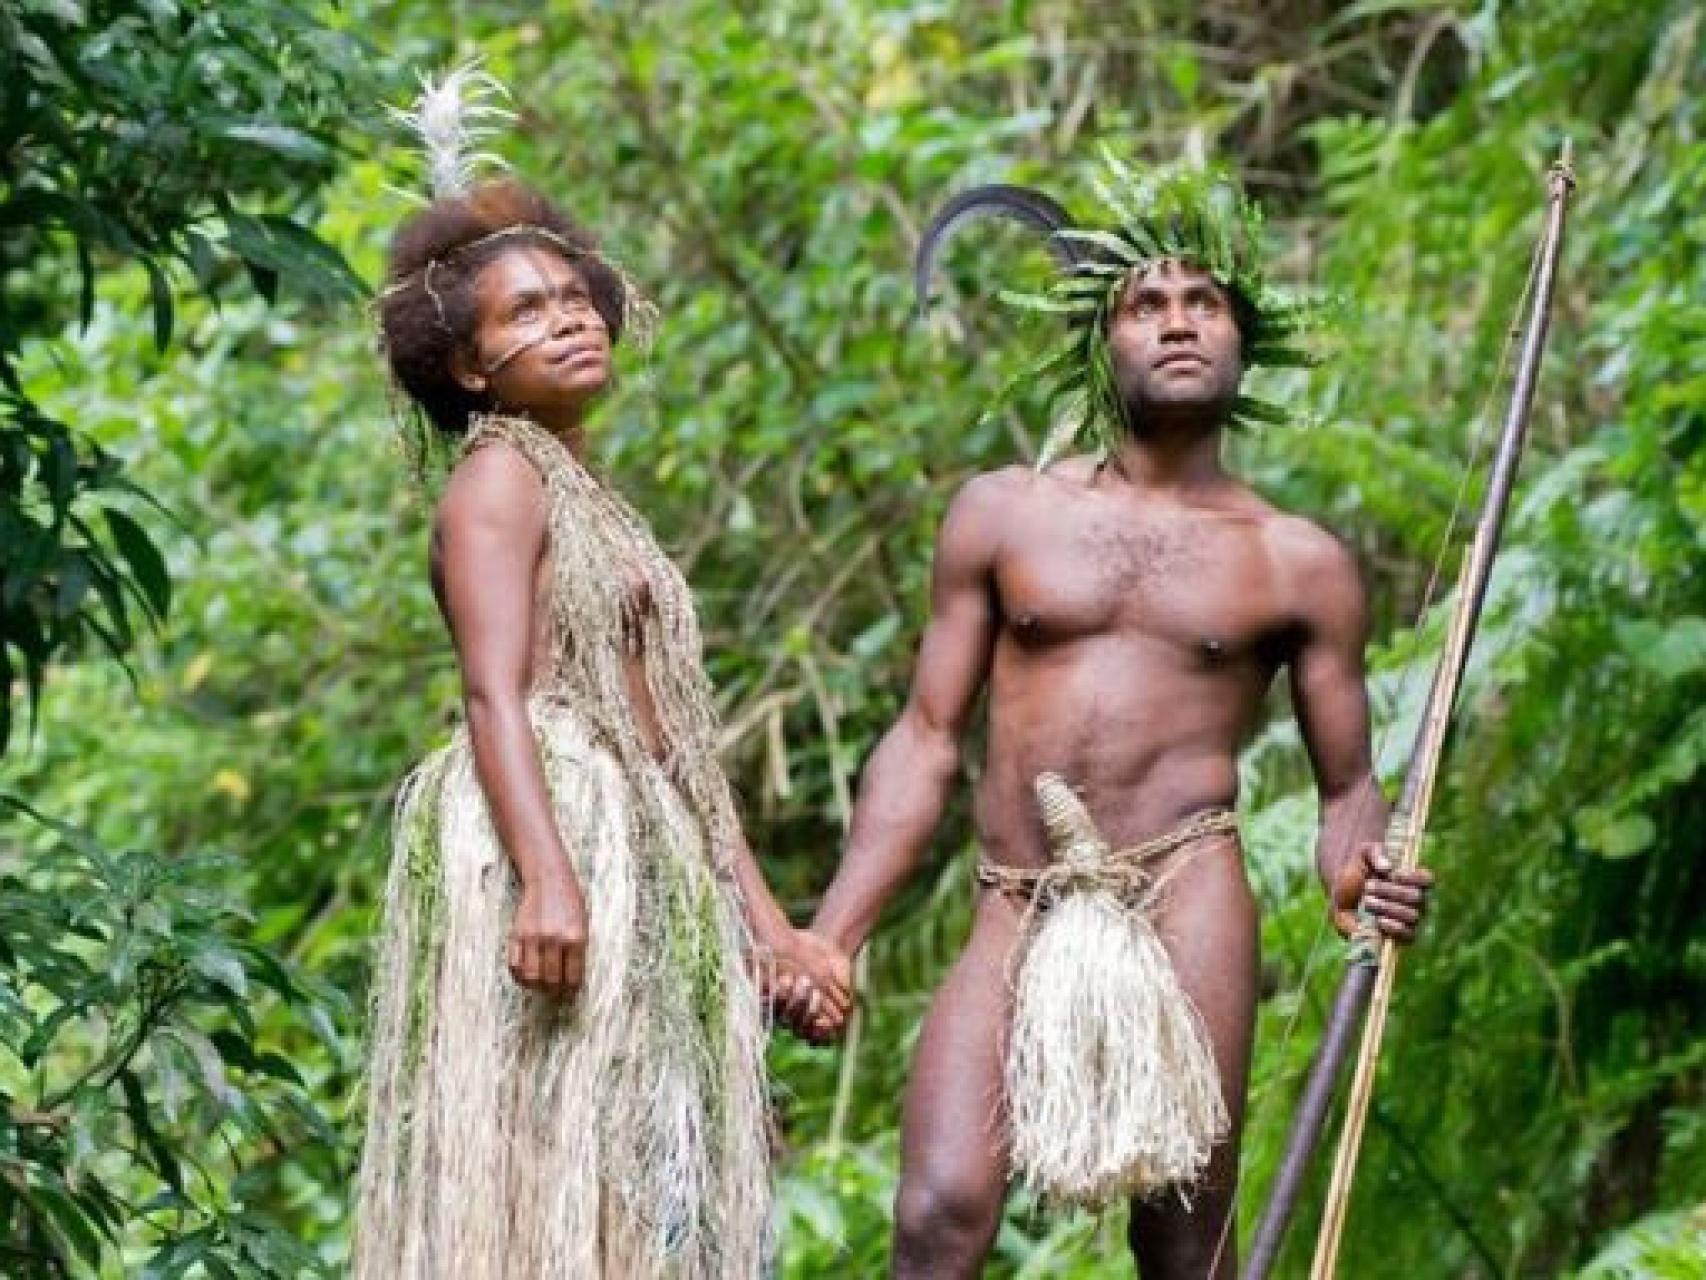 члены мужчин из племени фото 83